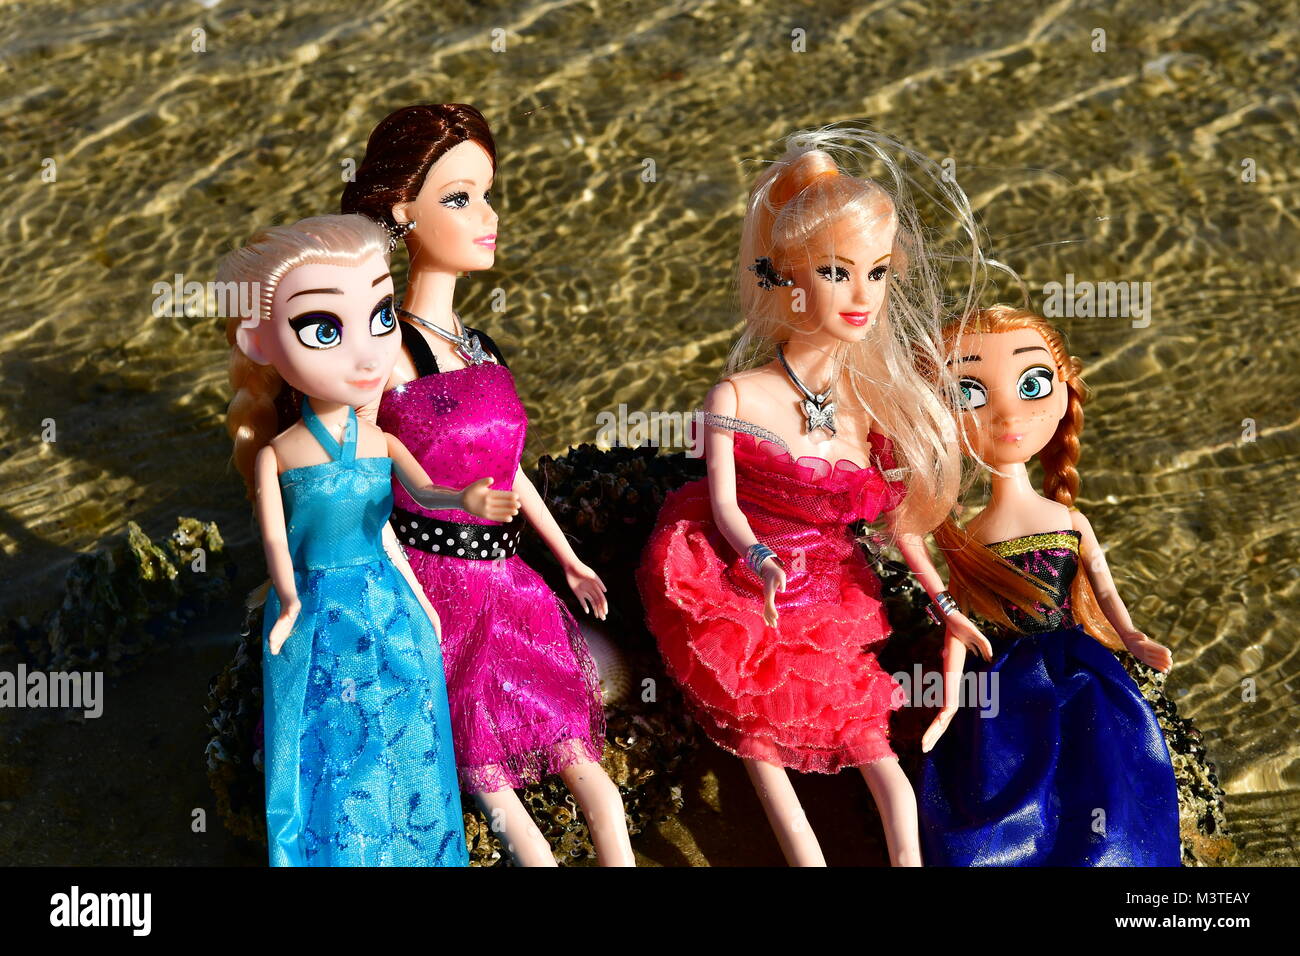 Barbie Puppen Junge am Strand spielen Stockfotografie - Alamy